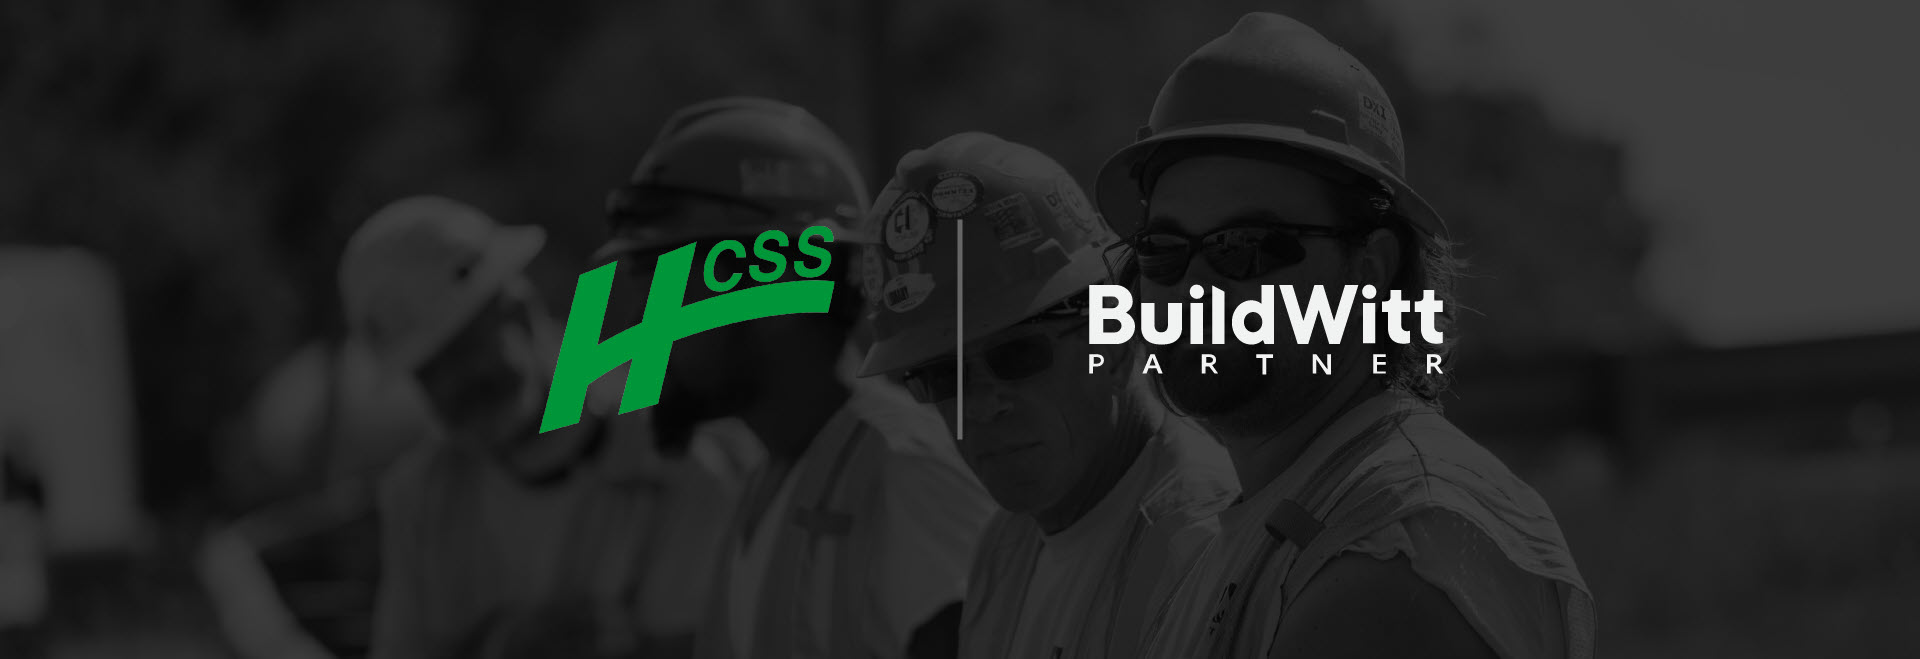 buildwitt hcss partnership